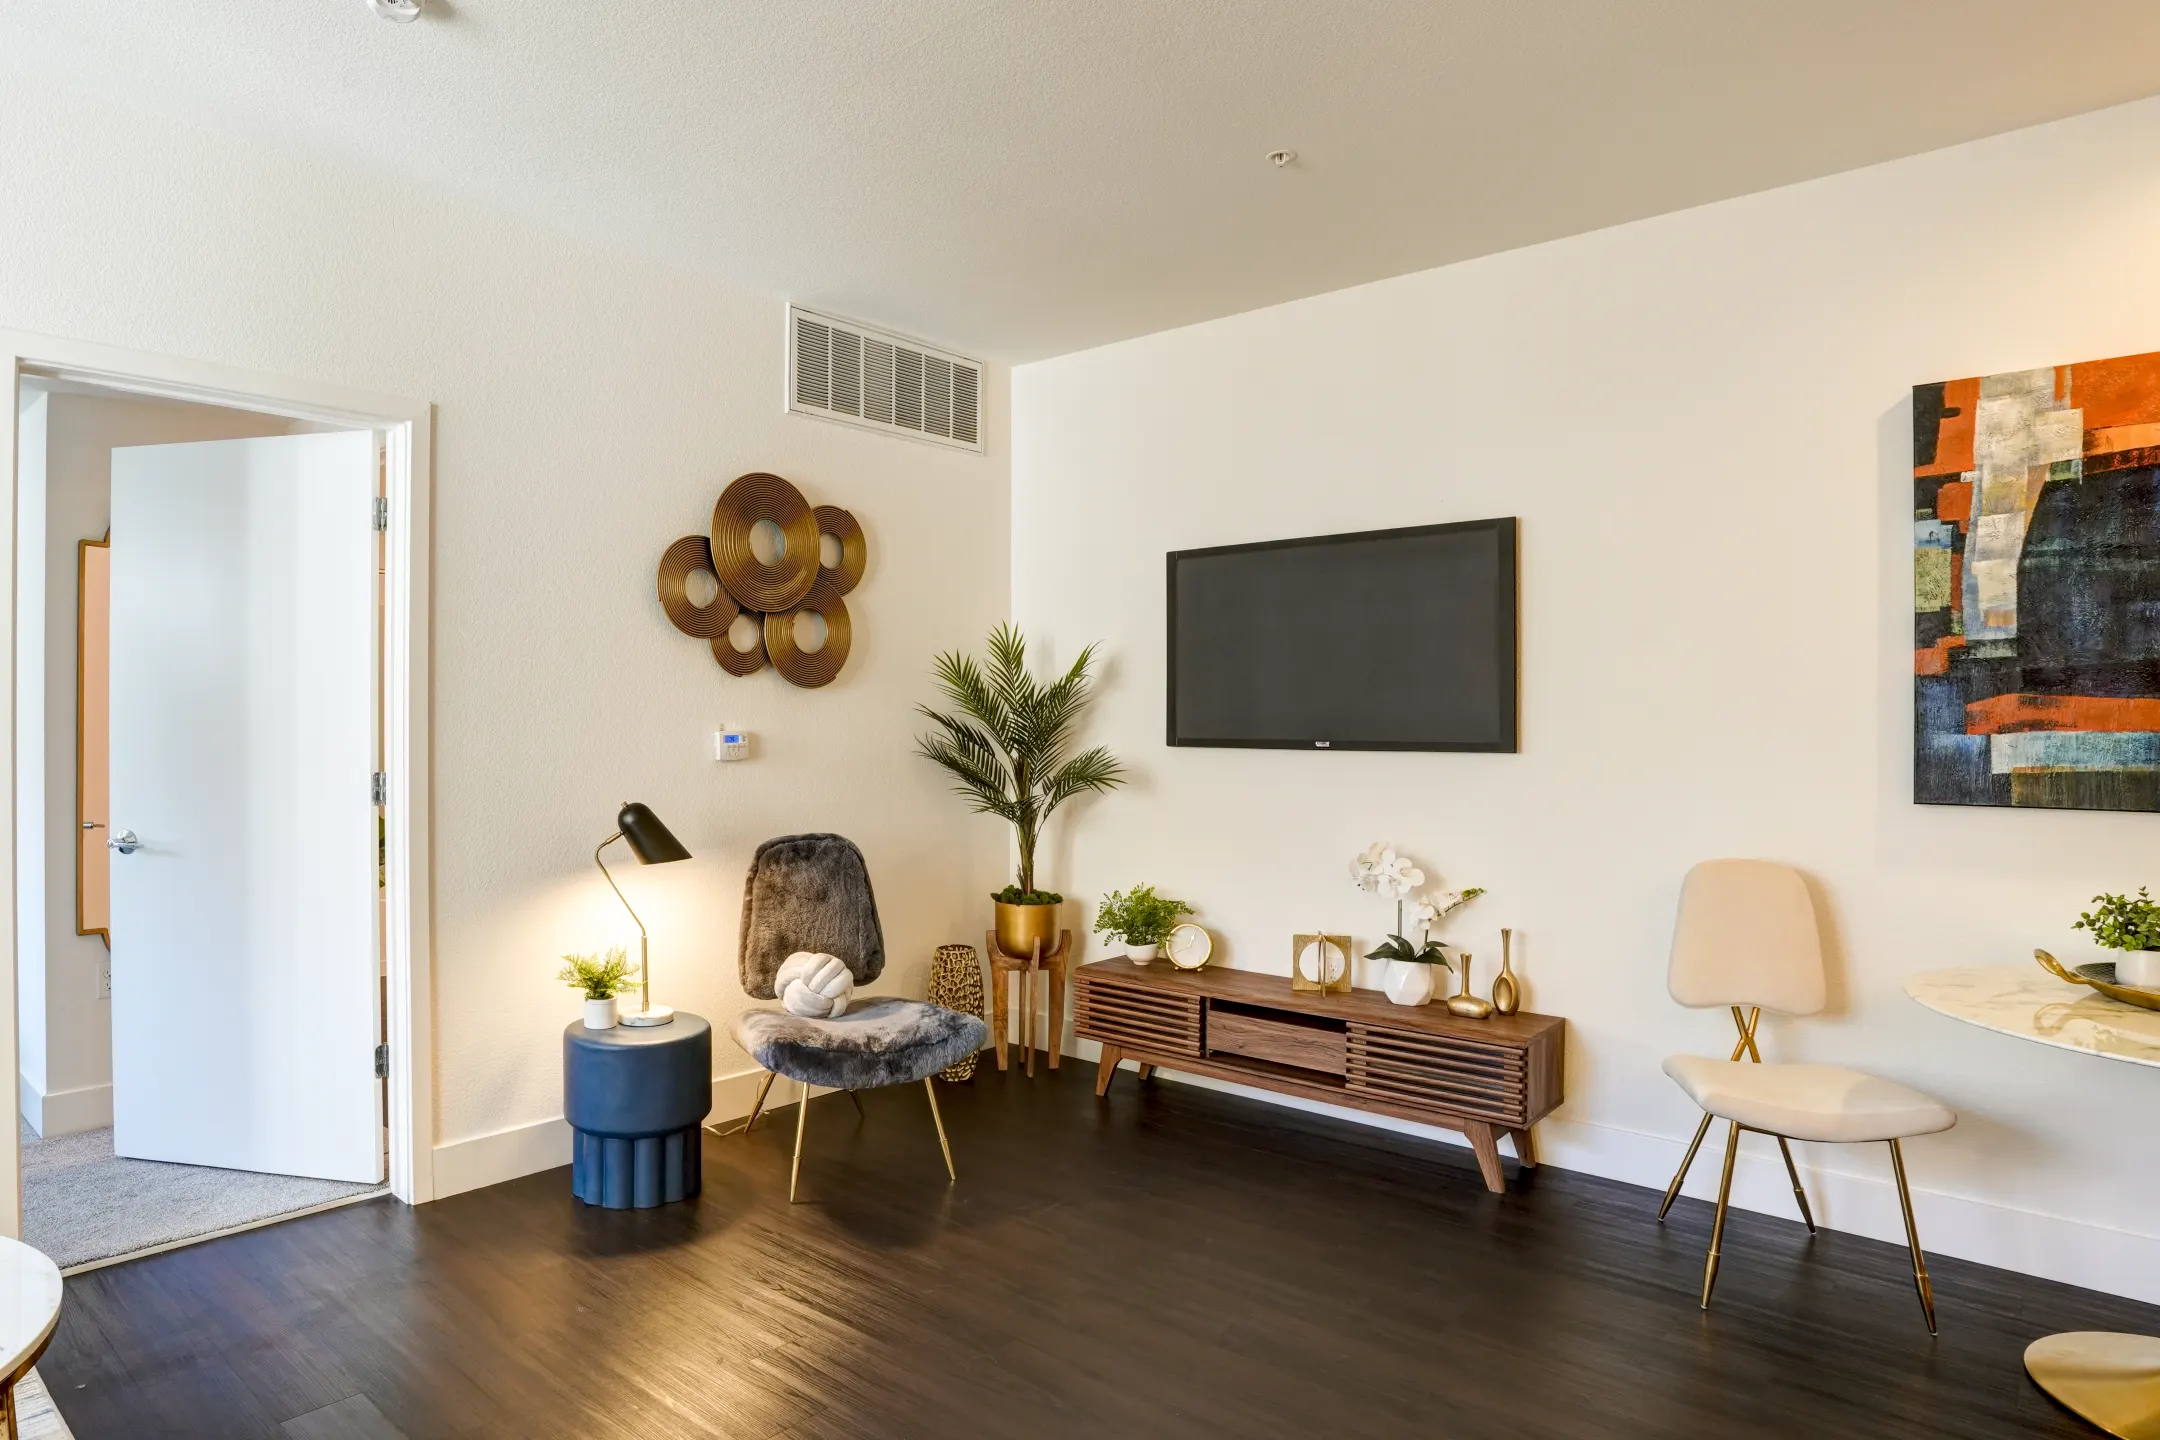 Living Room - Tuscany Apartments - Santa Clara, CA